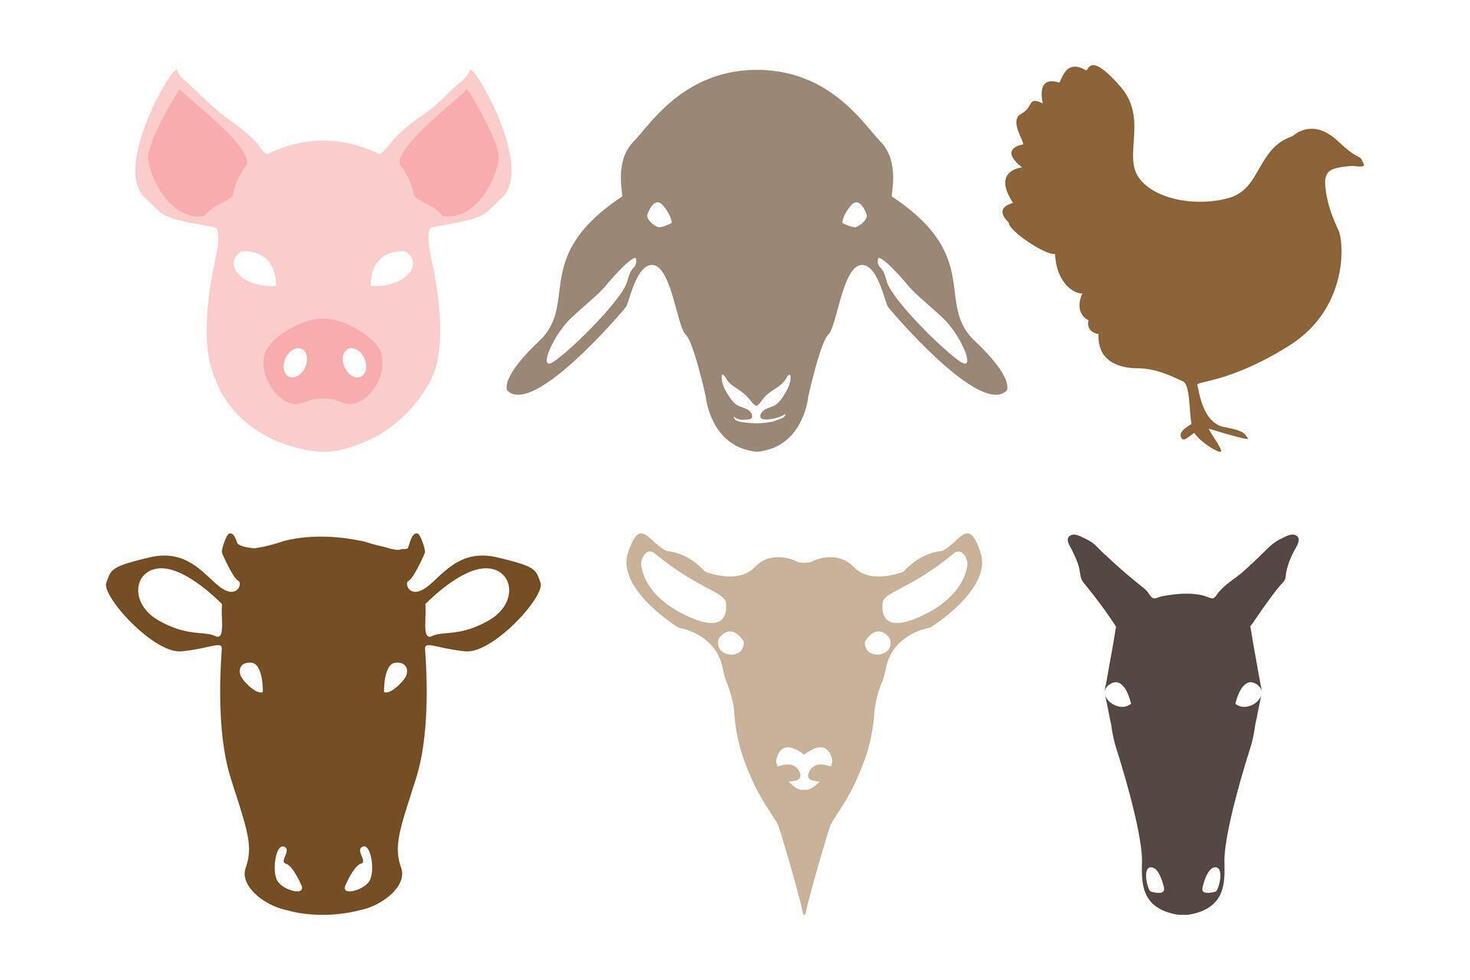 maiale, pecora, pollo, mucca, capra e cavallo domestico azienda agricola animale facce o teste collezione isolato vettore